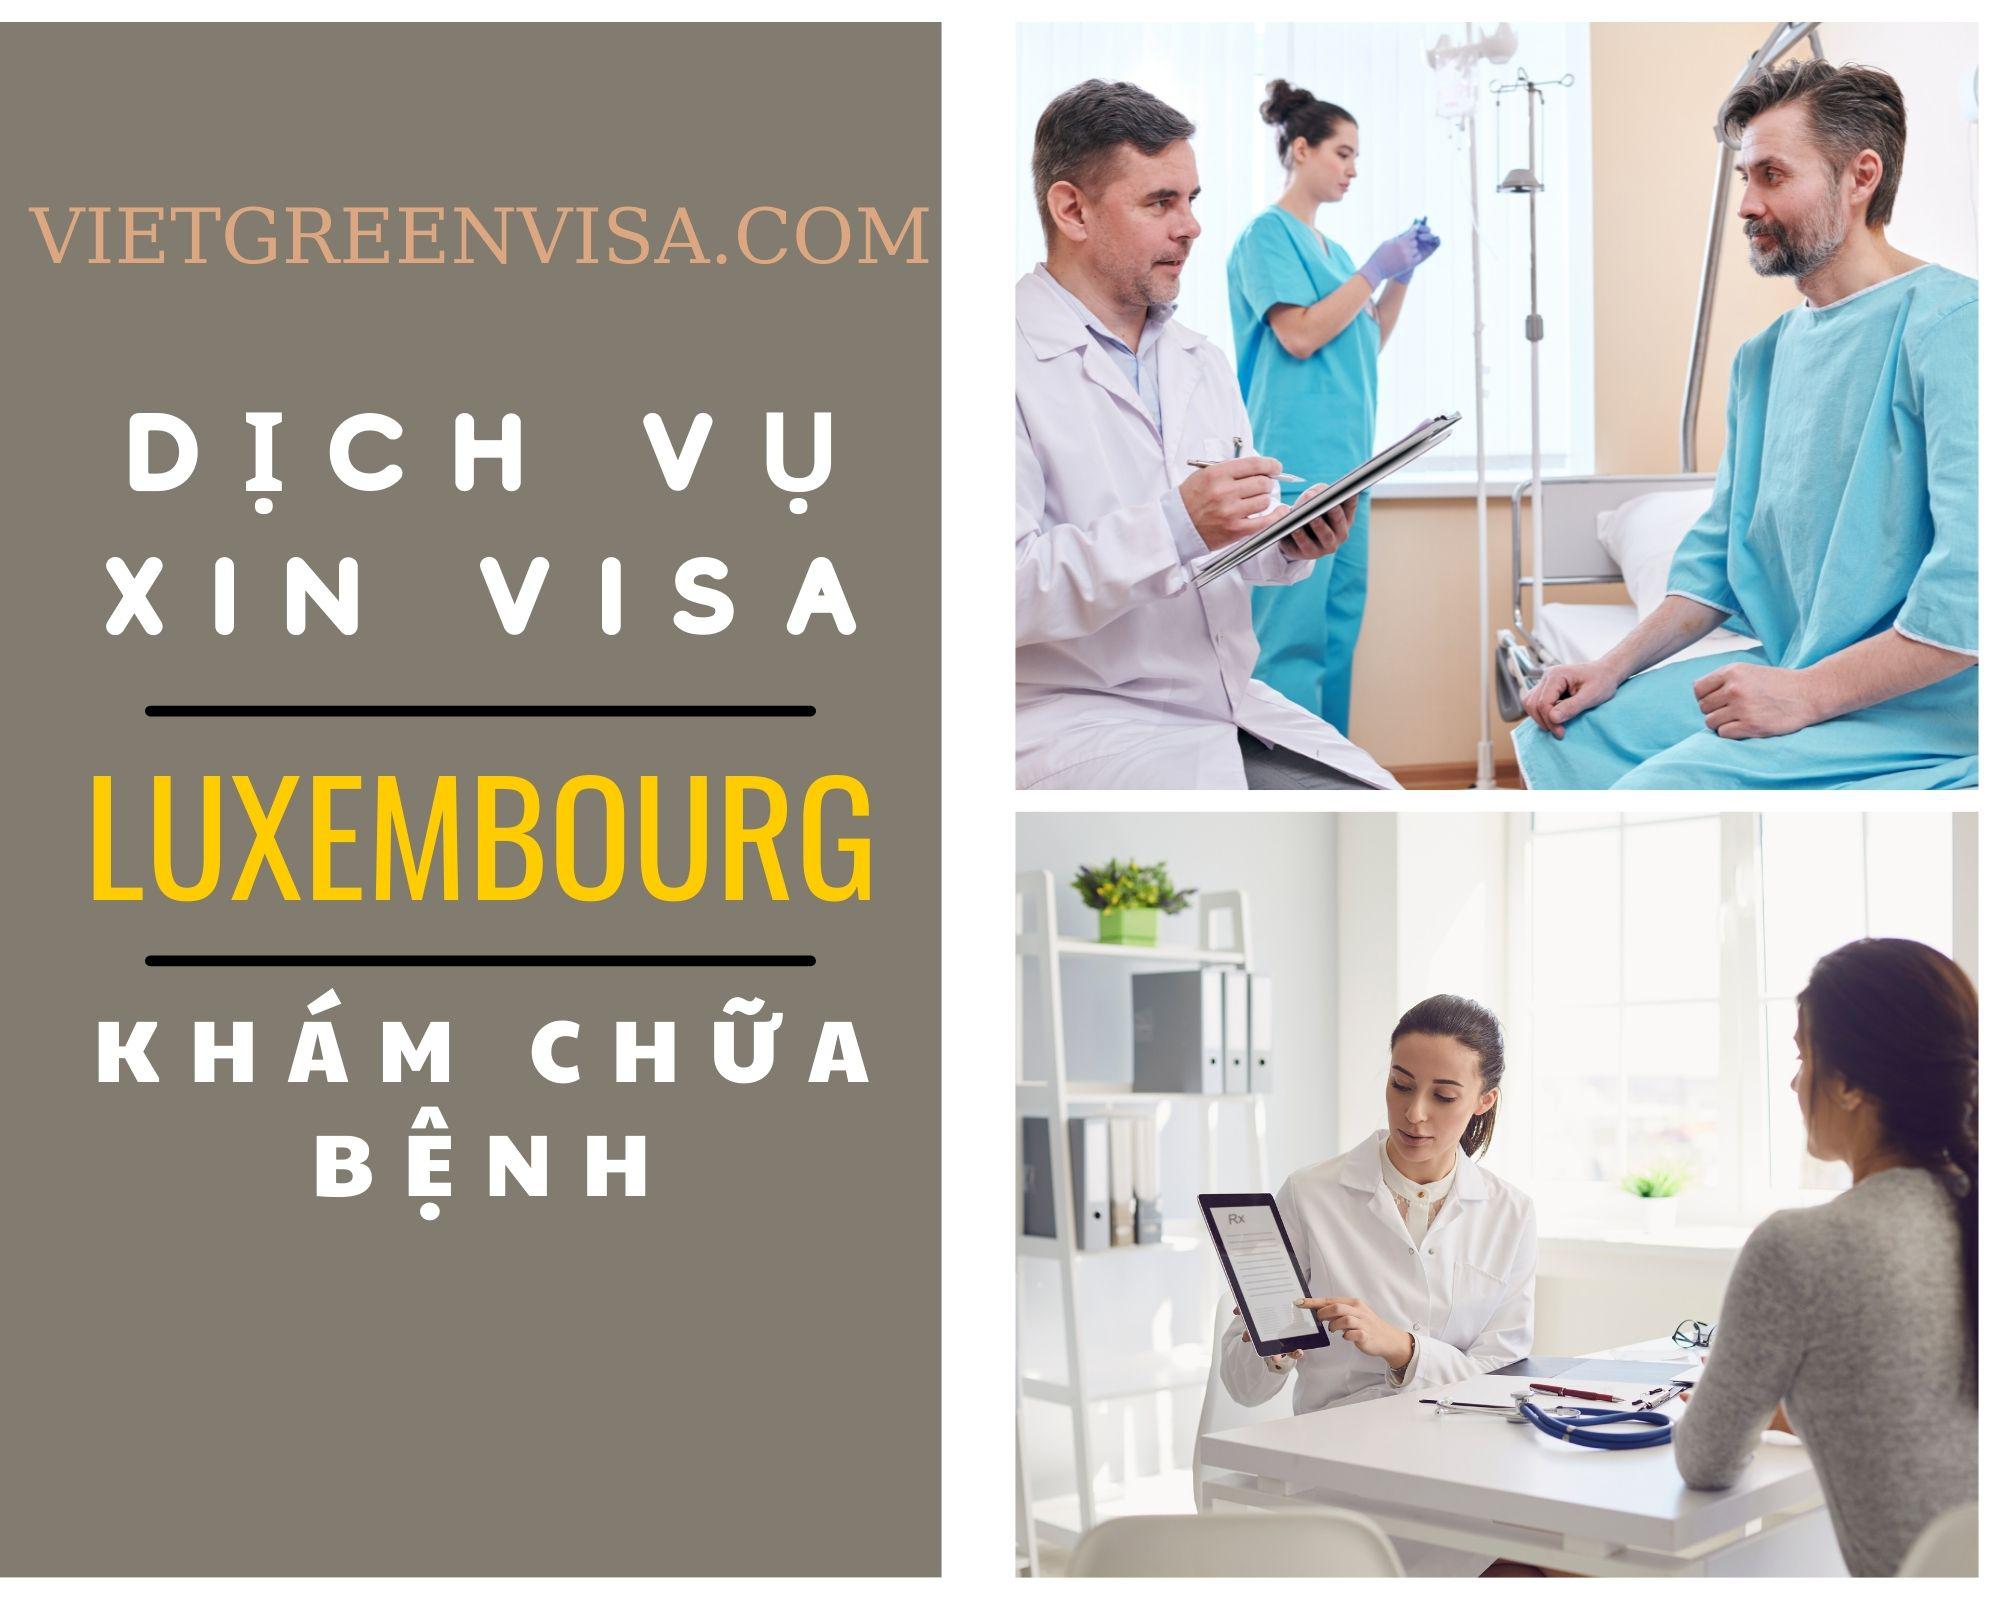 Hỗ trợ xin visa đi Luxembourg khám chữa bệnh nhanh chóng